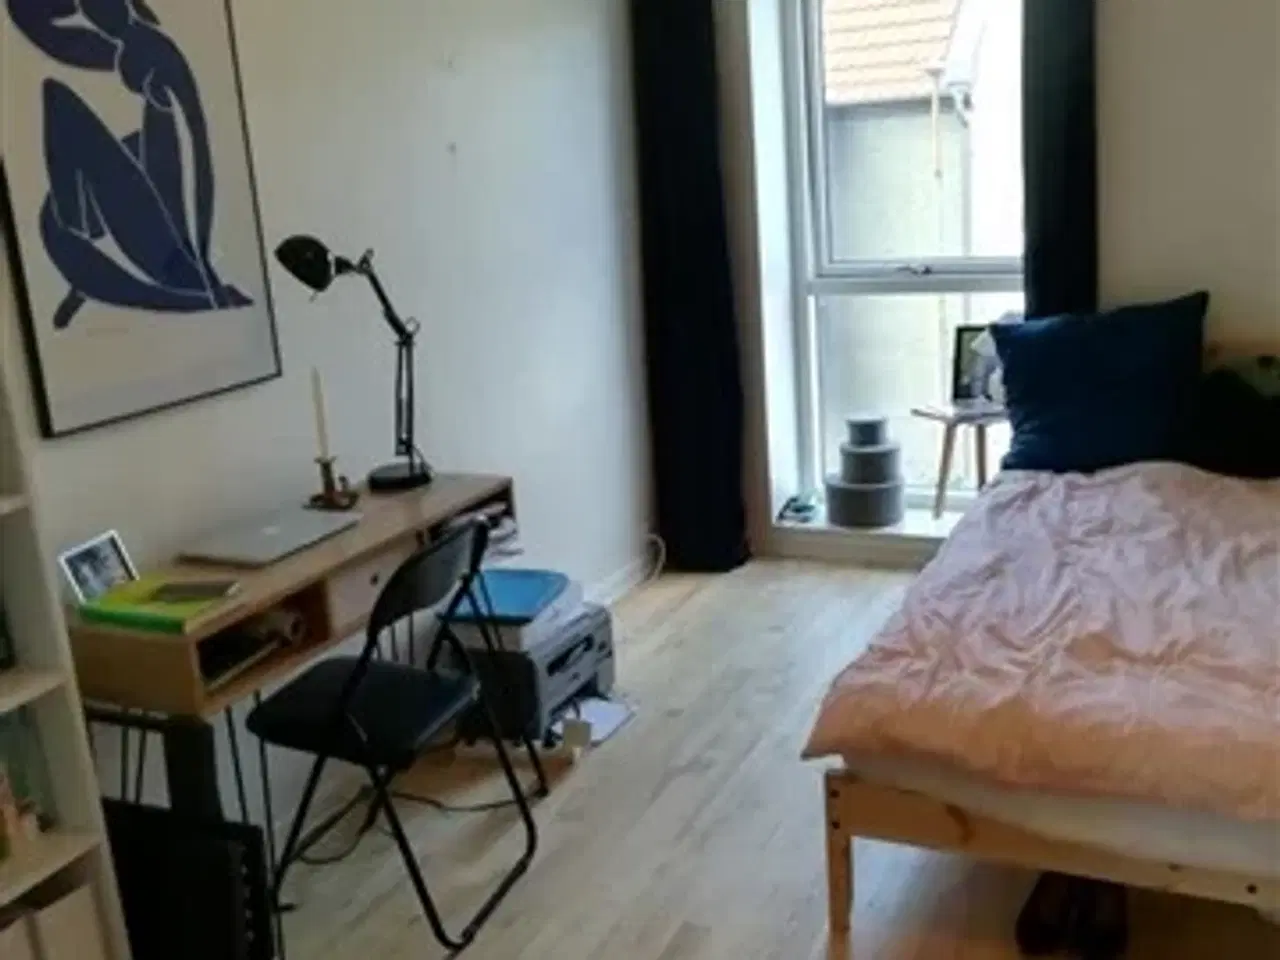 Billede 1 - Møbleret værelse udlejes/ Furnished room in new flat. , Åbyhøj, Aarhus